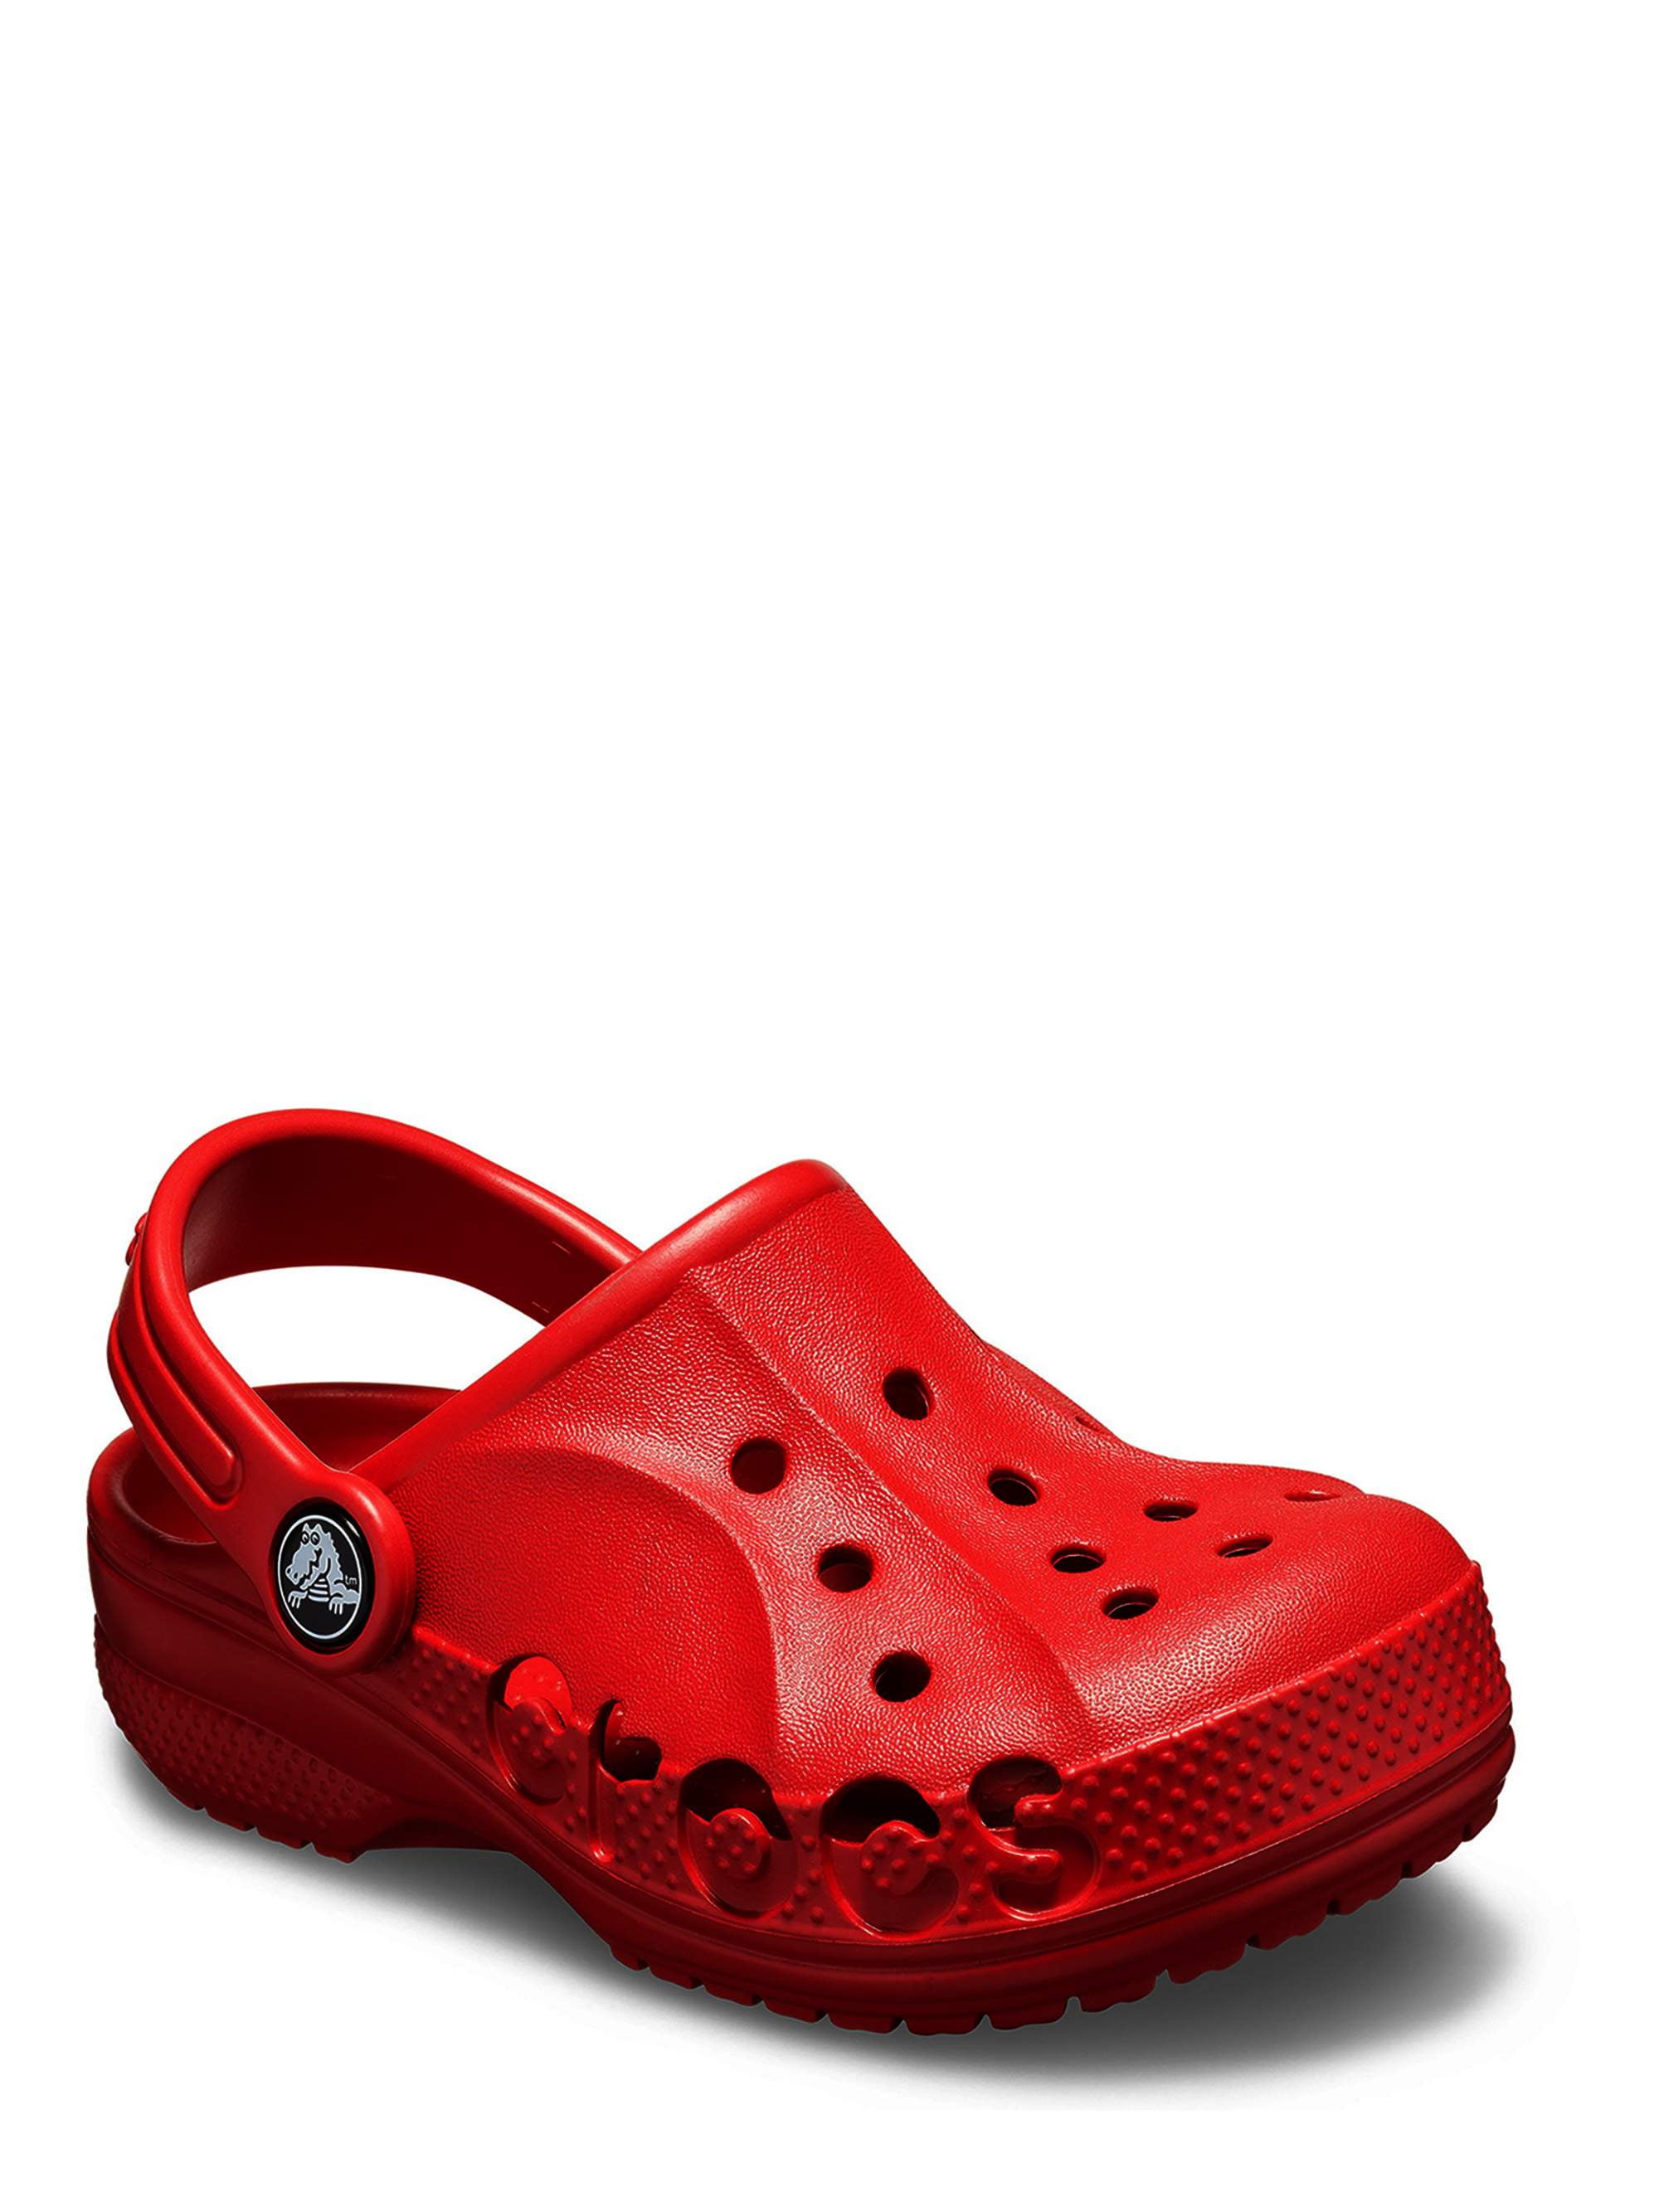 walmart croc style shoes